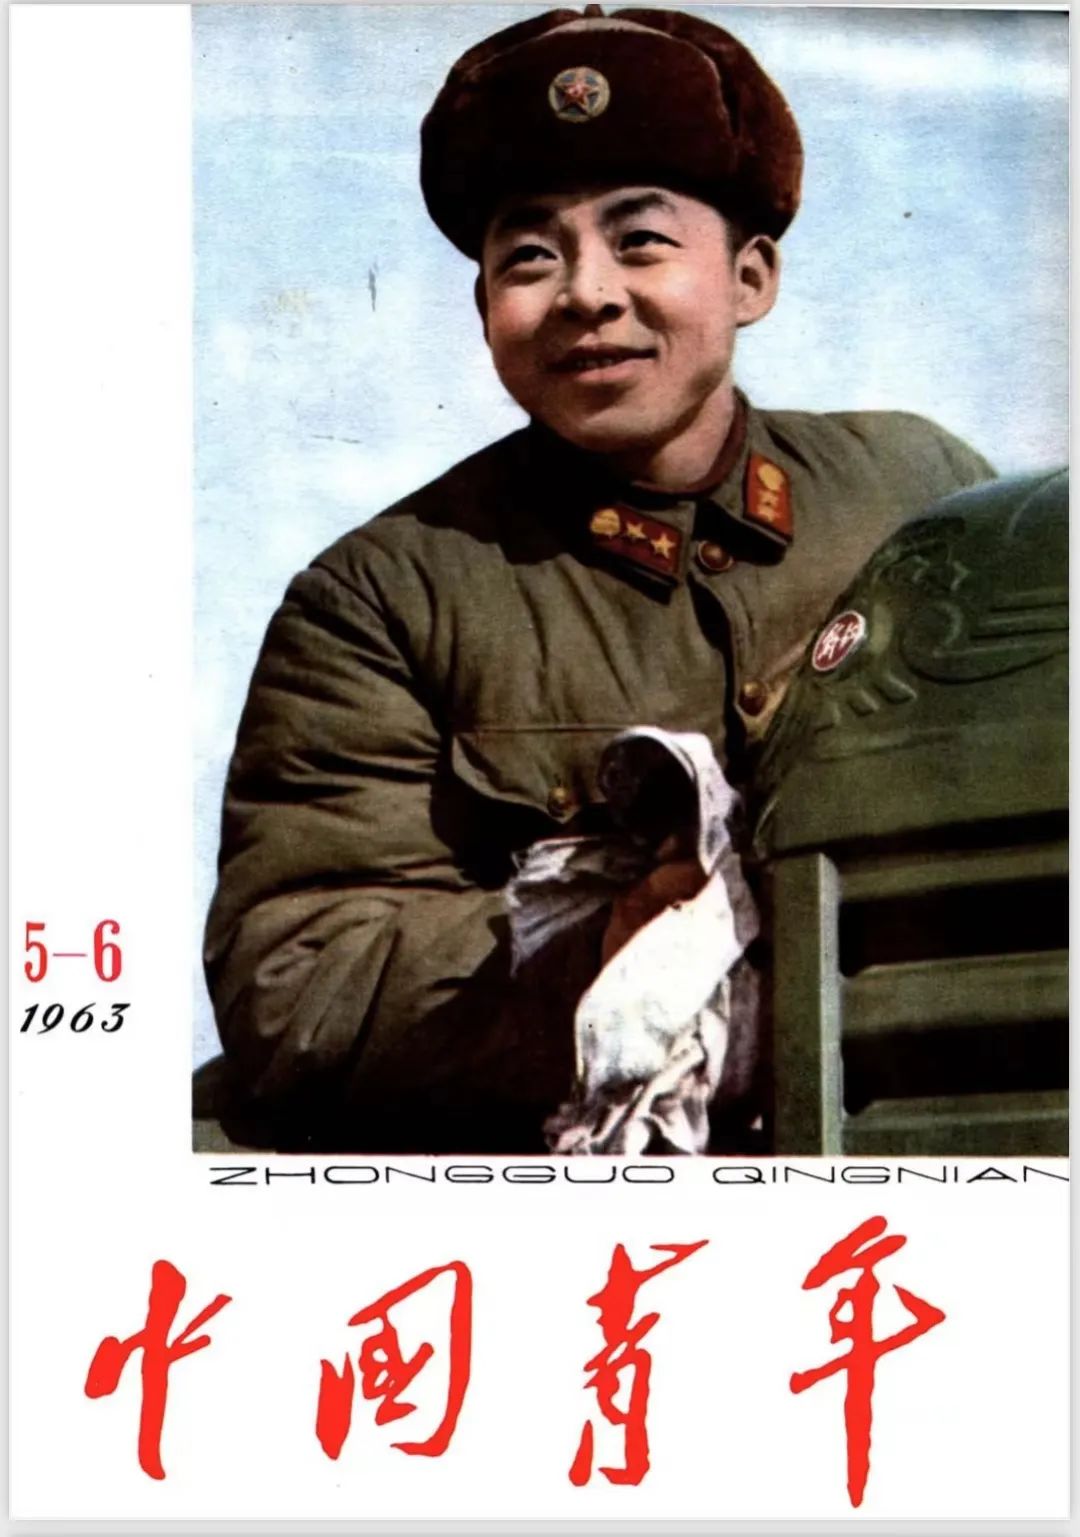 毛泽东主席为何把“向雷锋同志学习”的题词写给《中国青年》